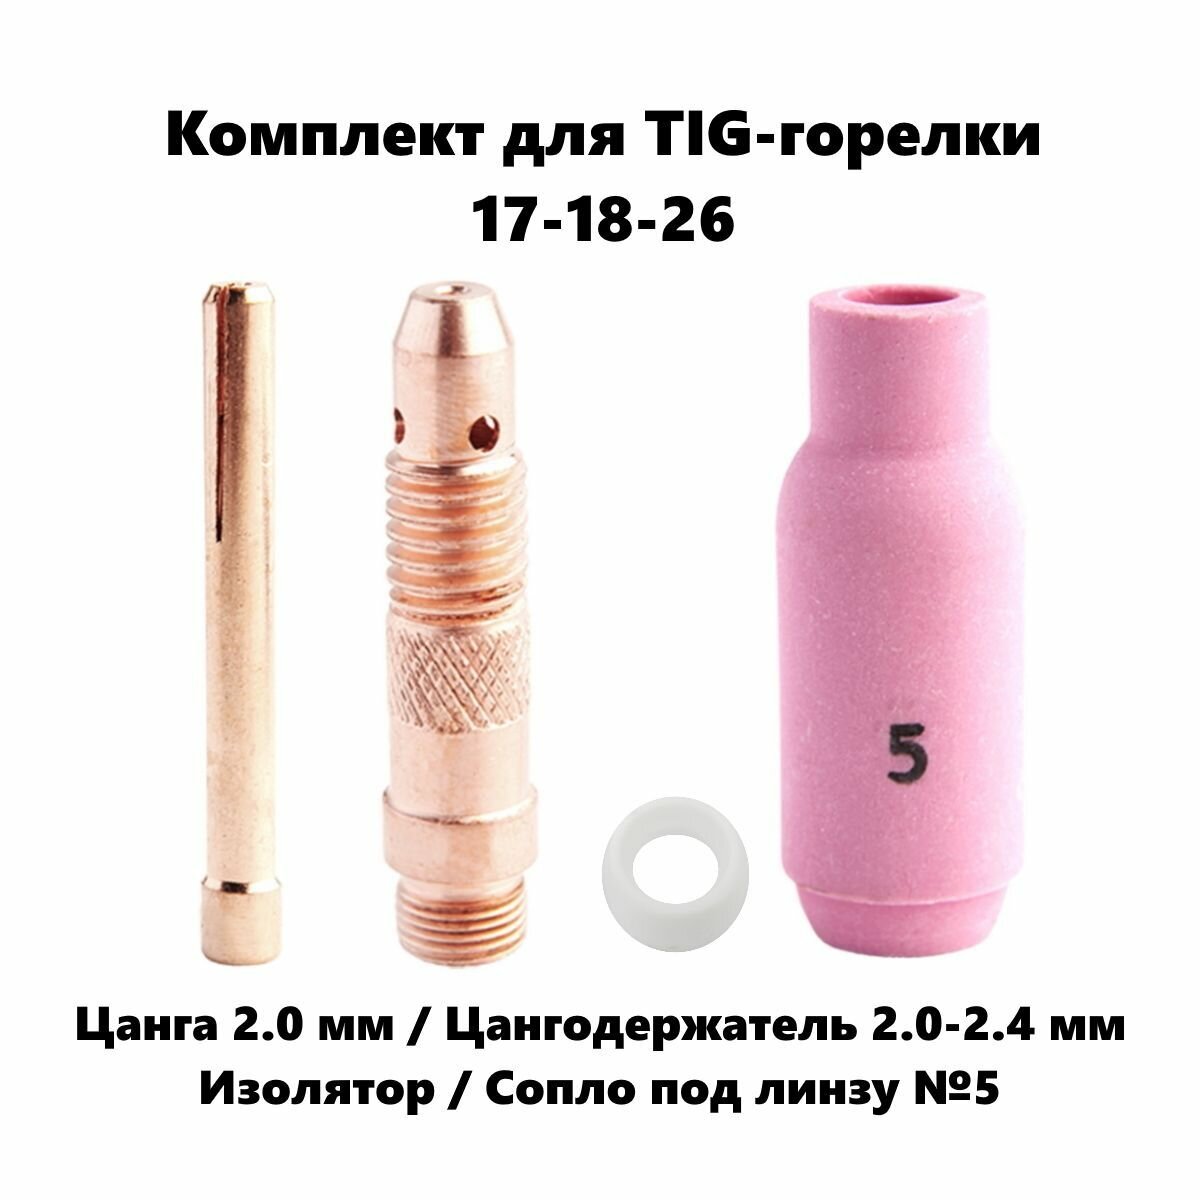 Набор 2.0 мм цанга Сопло керамическое №5 цангодержатель изолятор для TIG горелки (17-18-26)